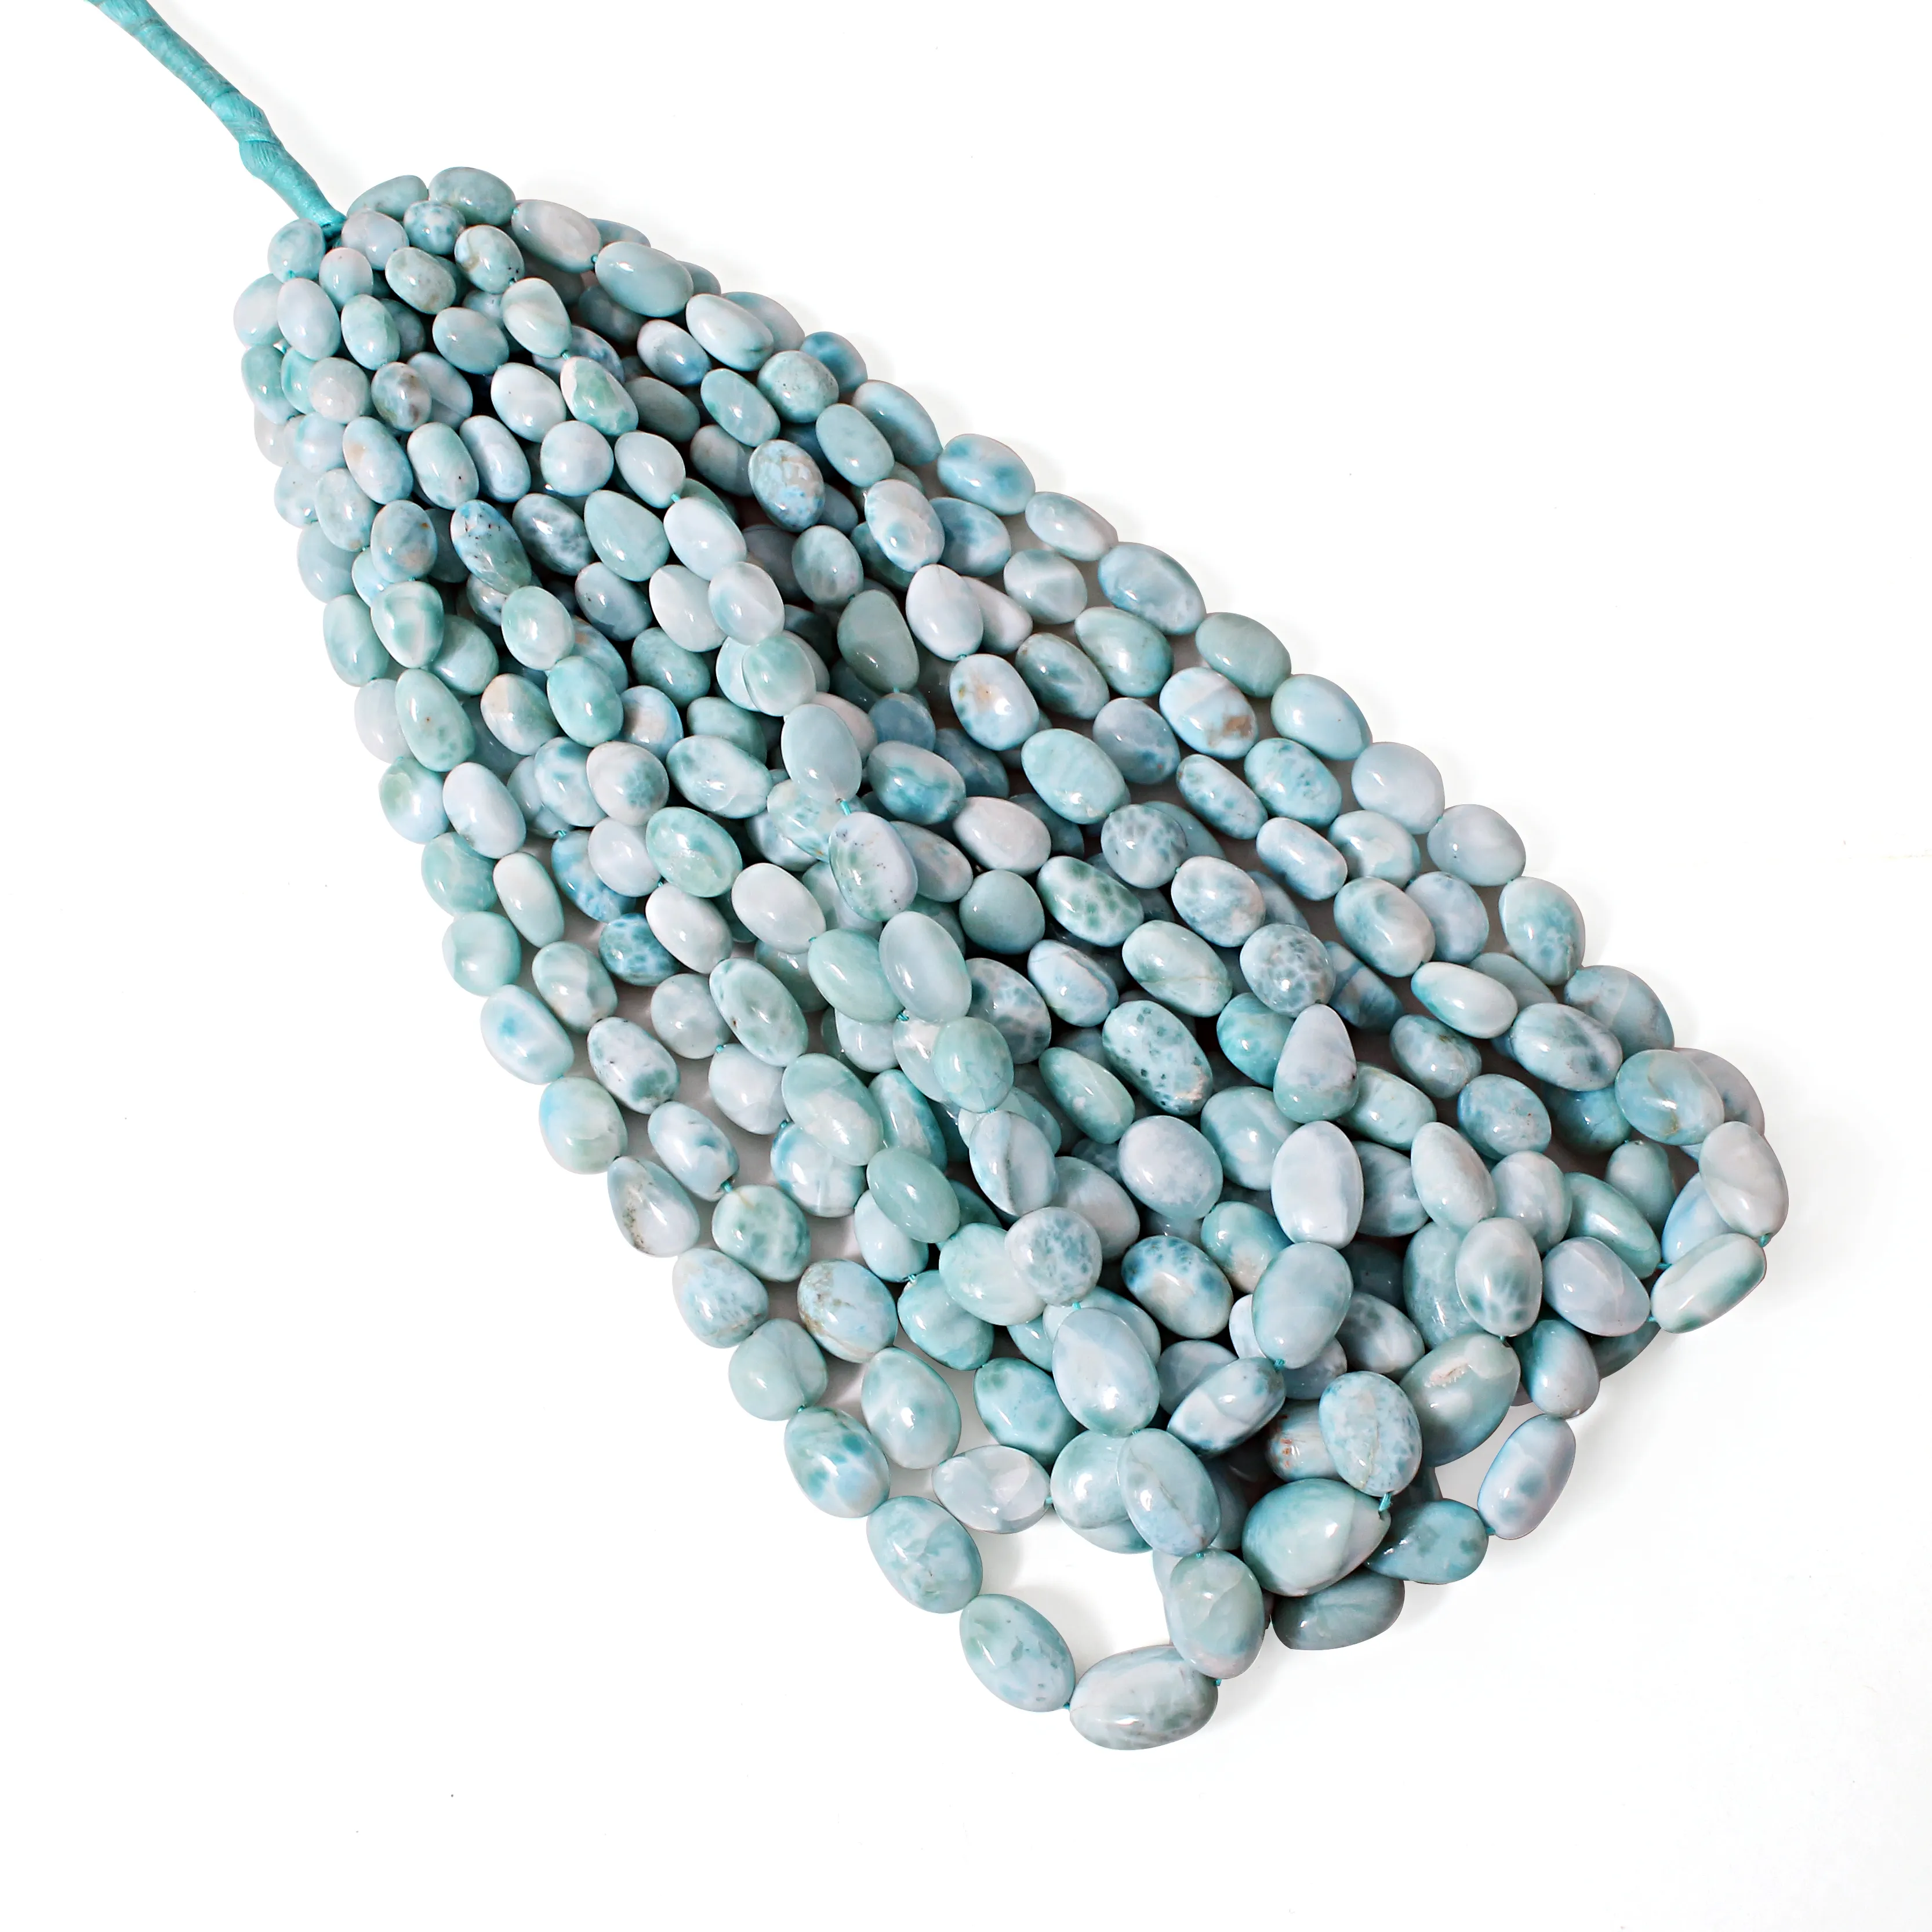 Blue Larimar Polished Tumbled Stone Beads Strand, Larimar Nuggets Gemstone Beads For Jewelry Making